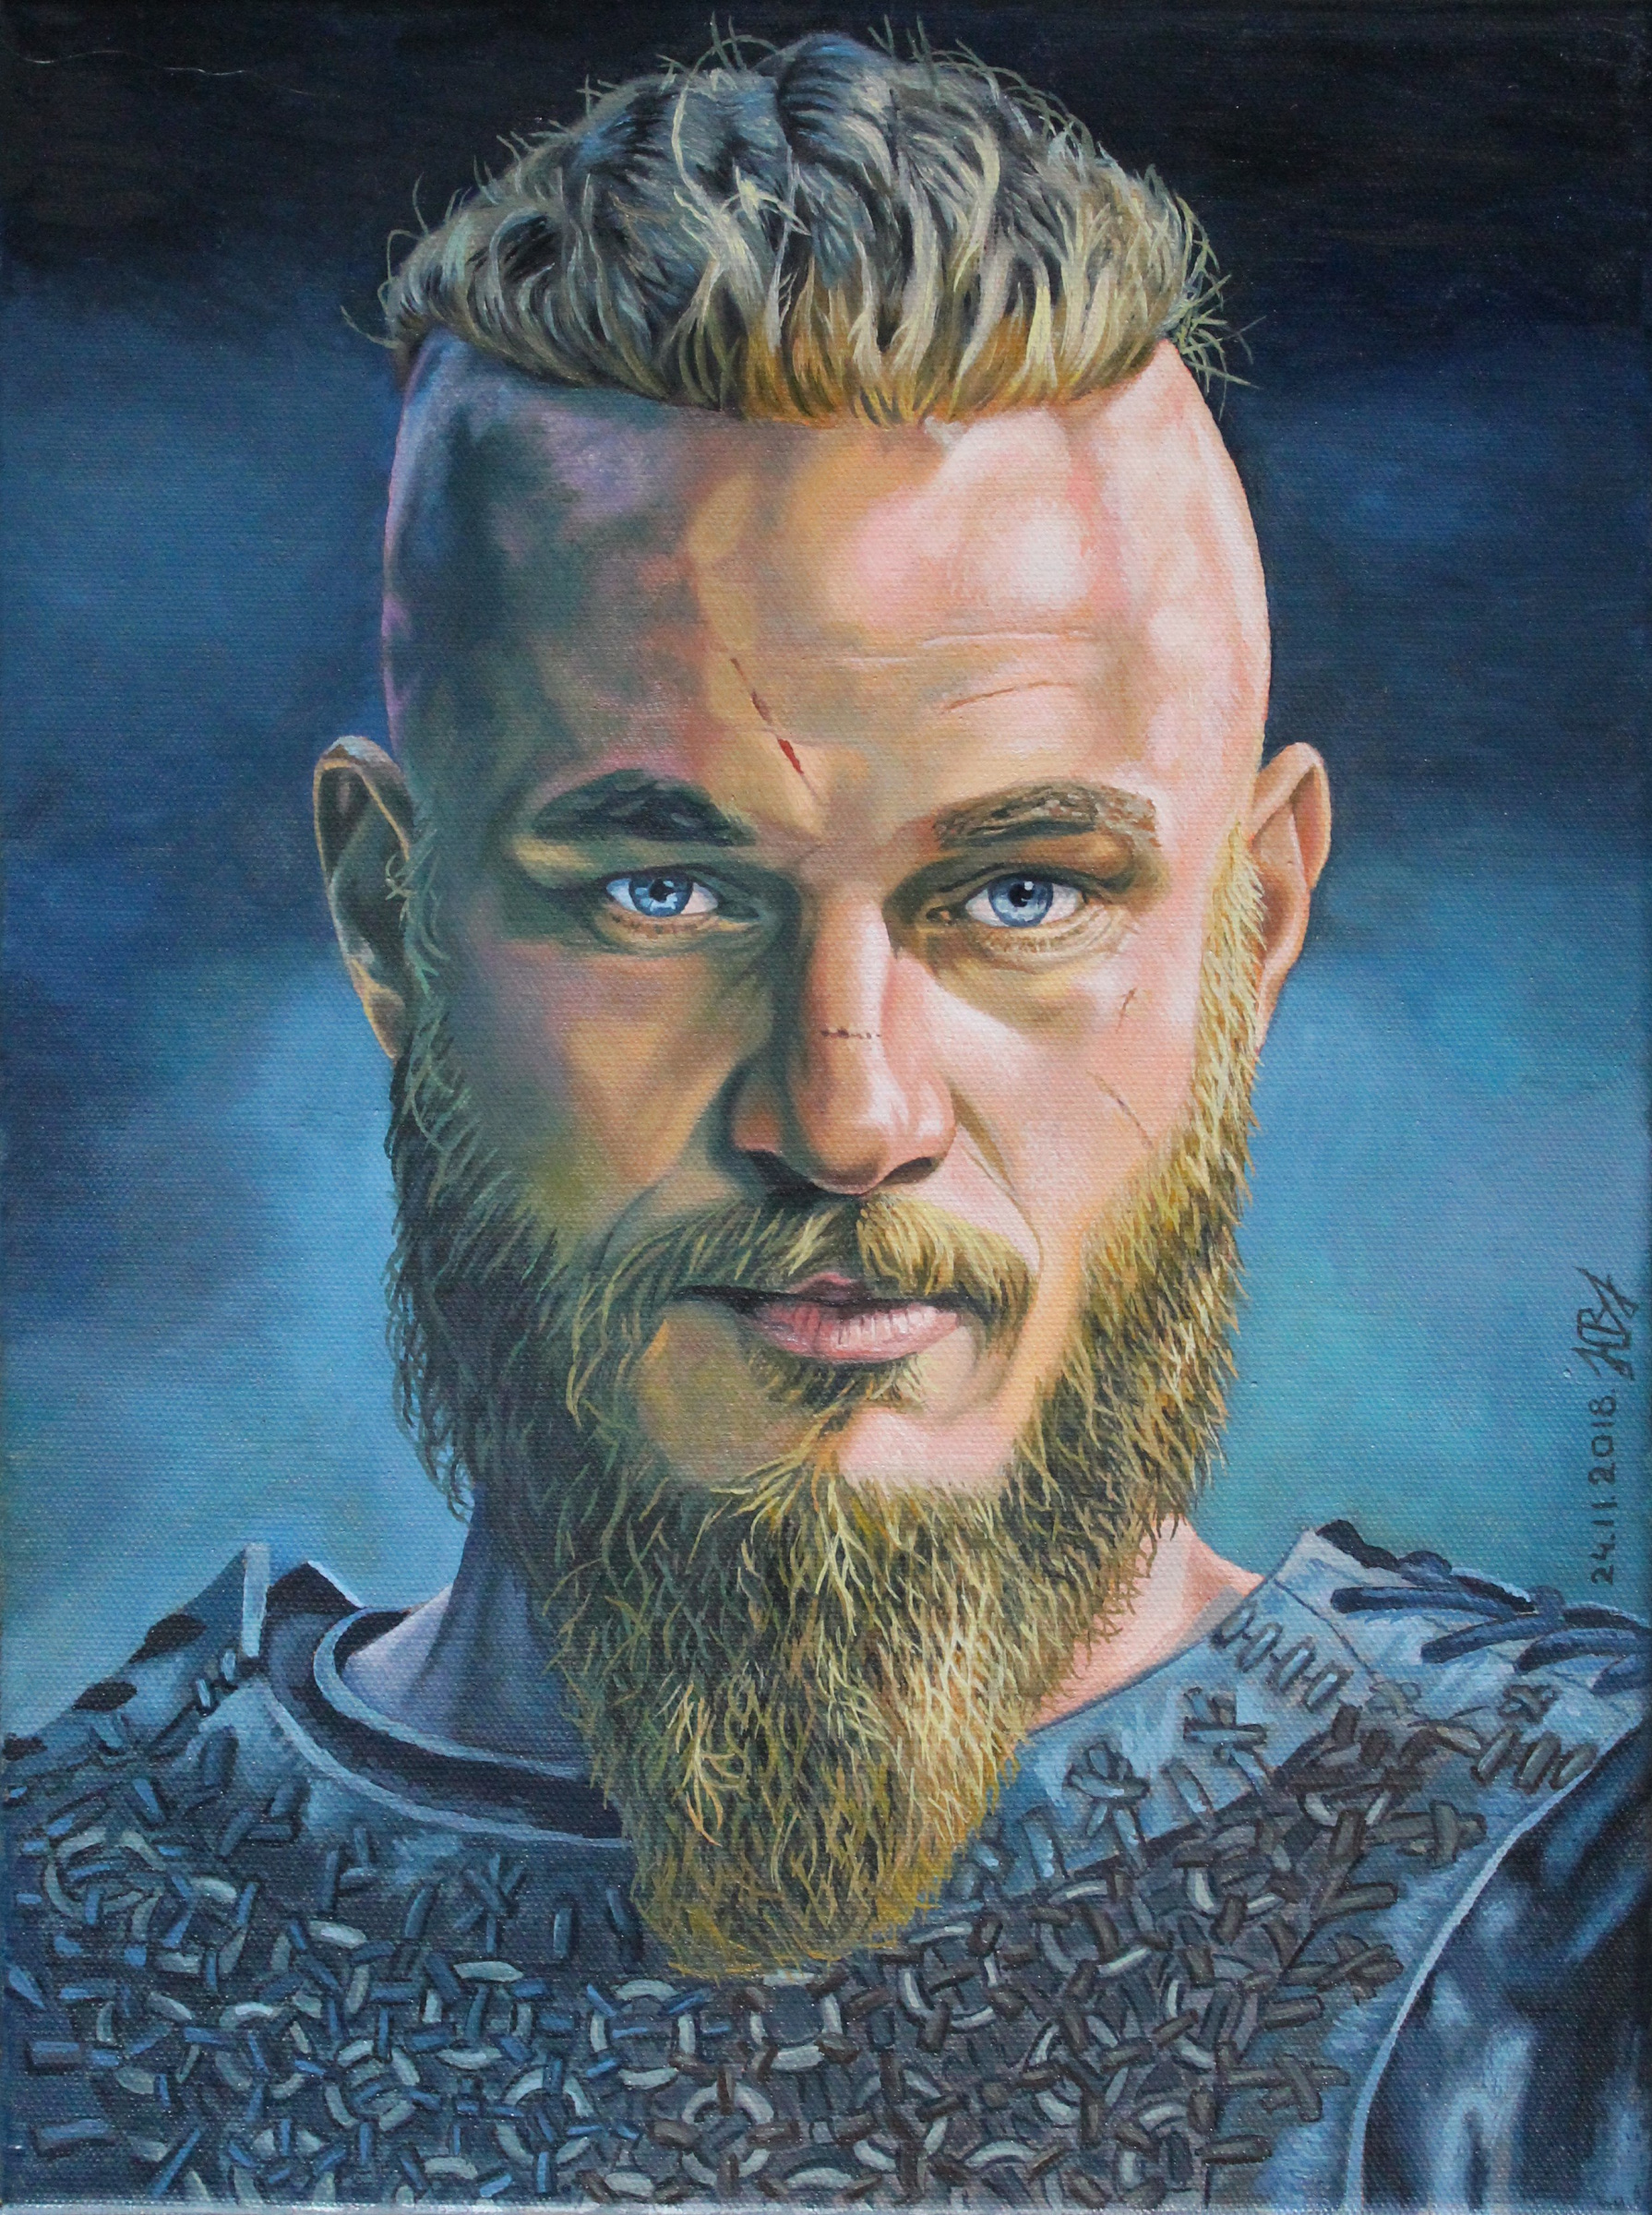 Viking Hairstyles for Men